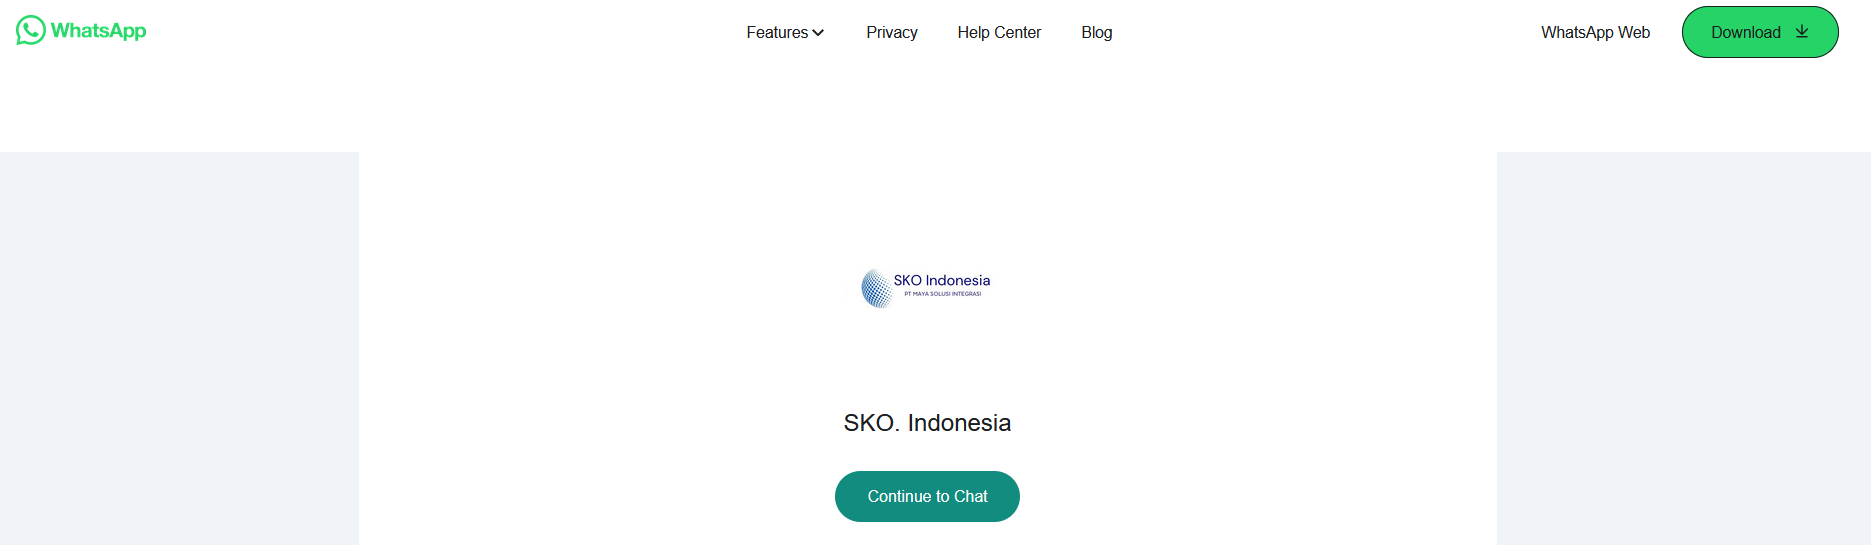 SKO Indonesia